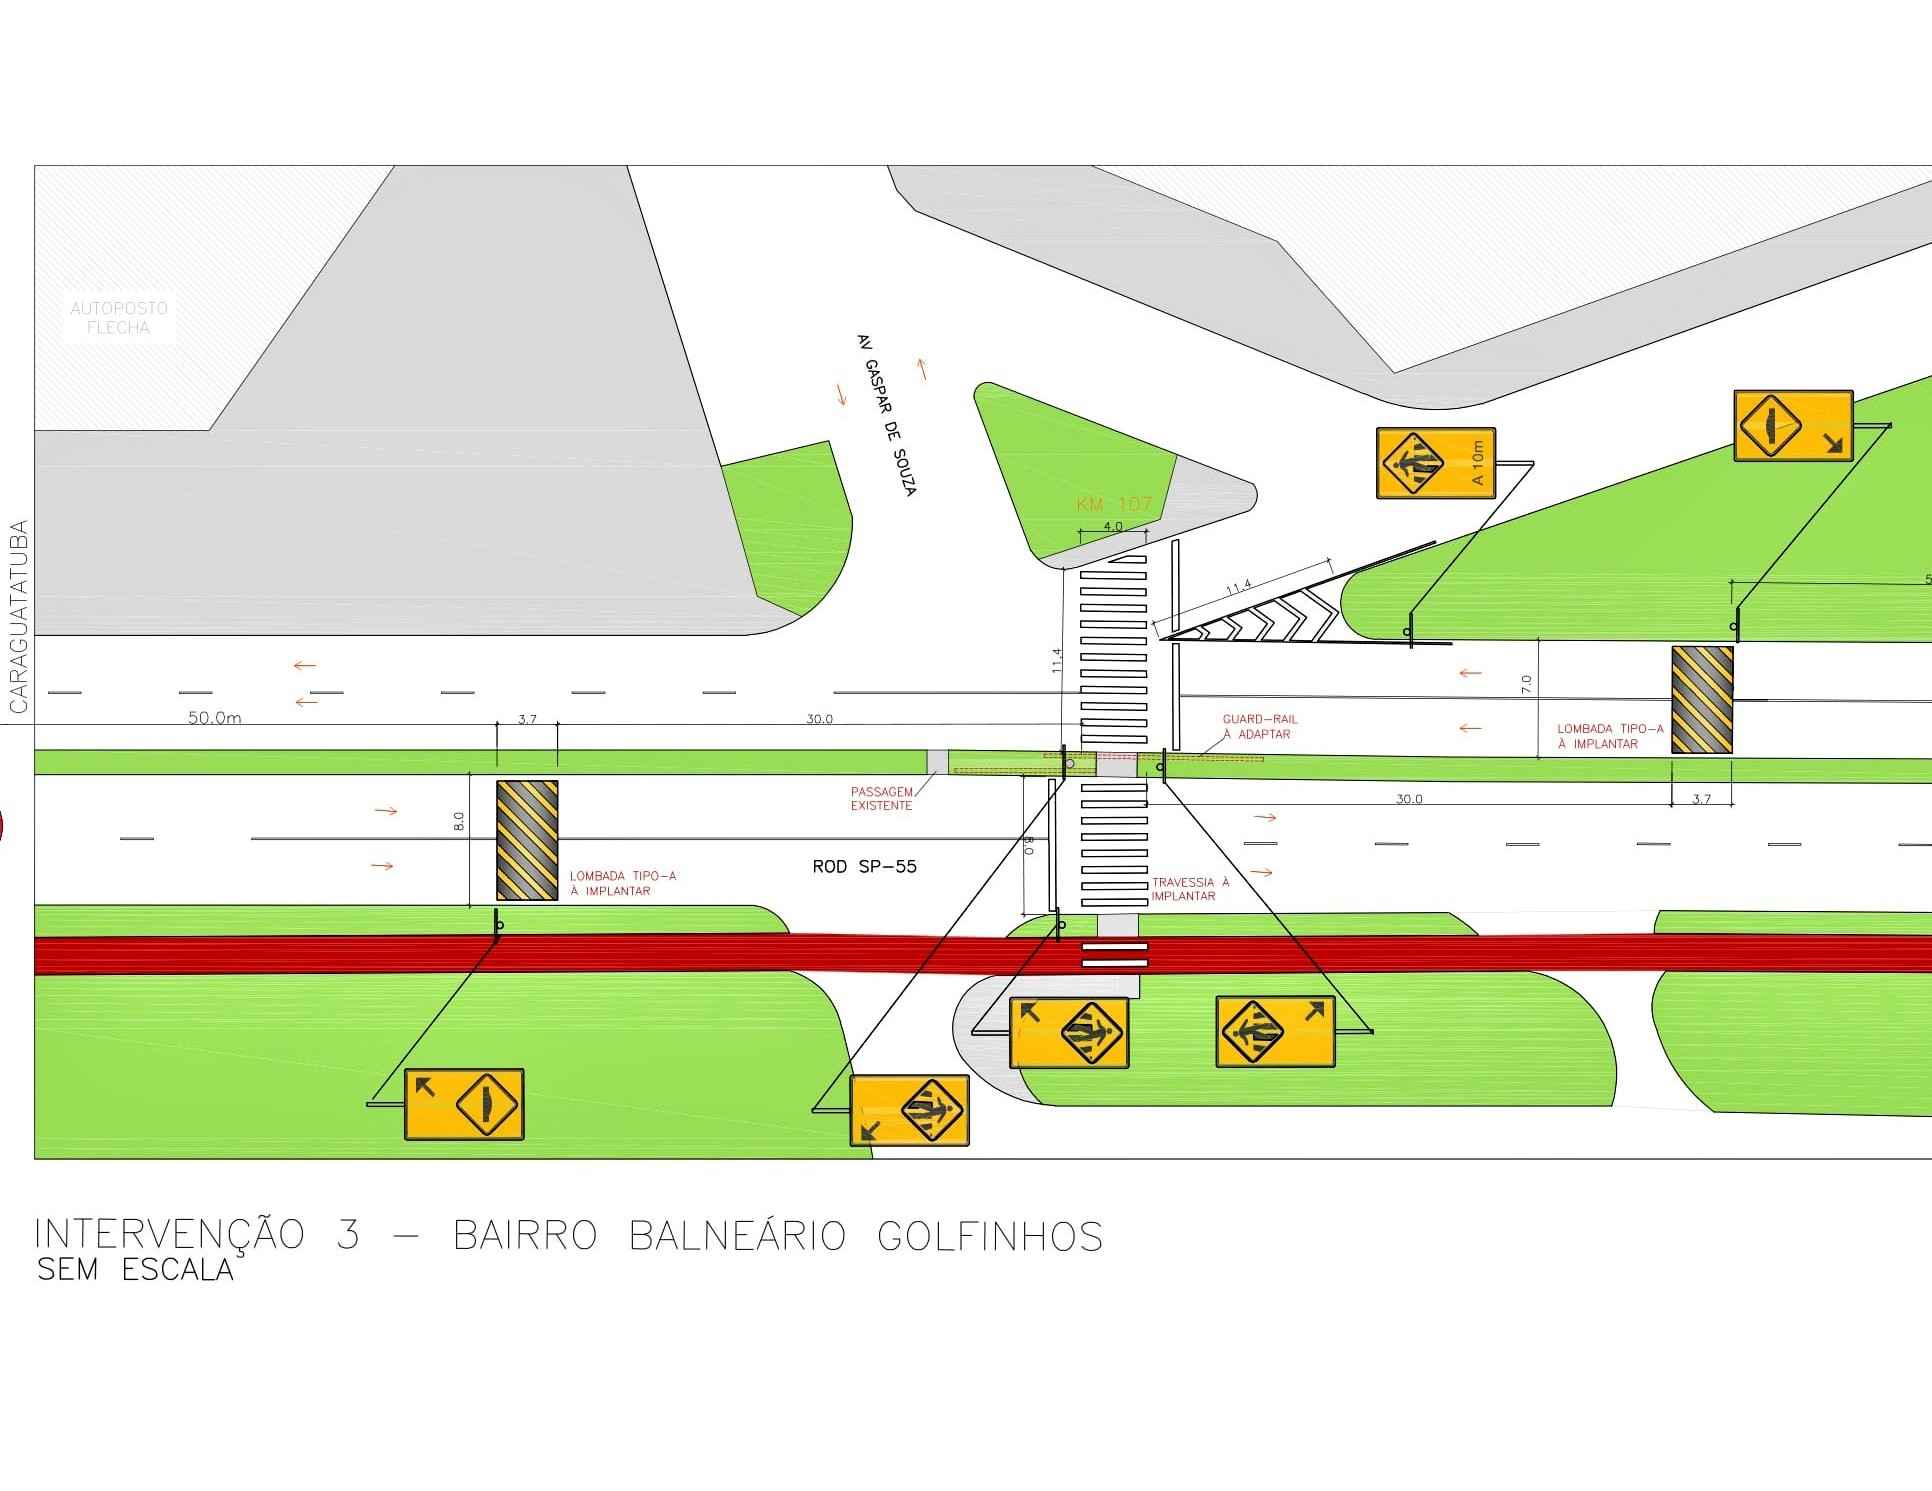 Prefeitura instalará redutores de velocidade na SP-55 para mais segurança de pedestres (Arte: Divulgação)